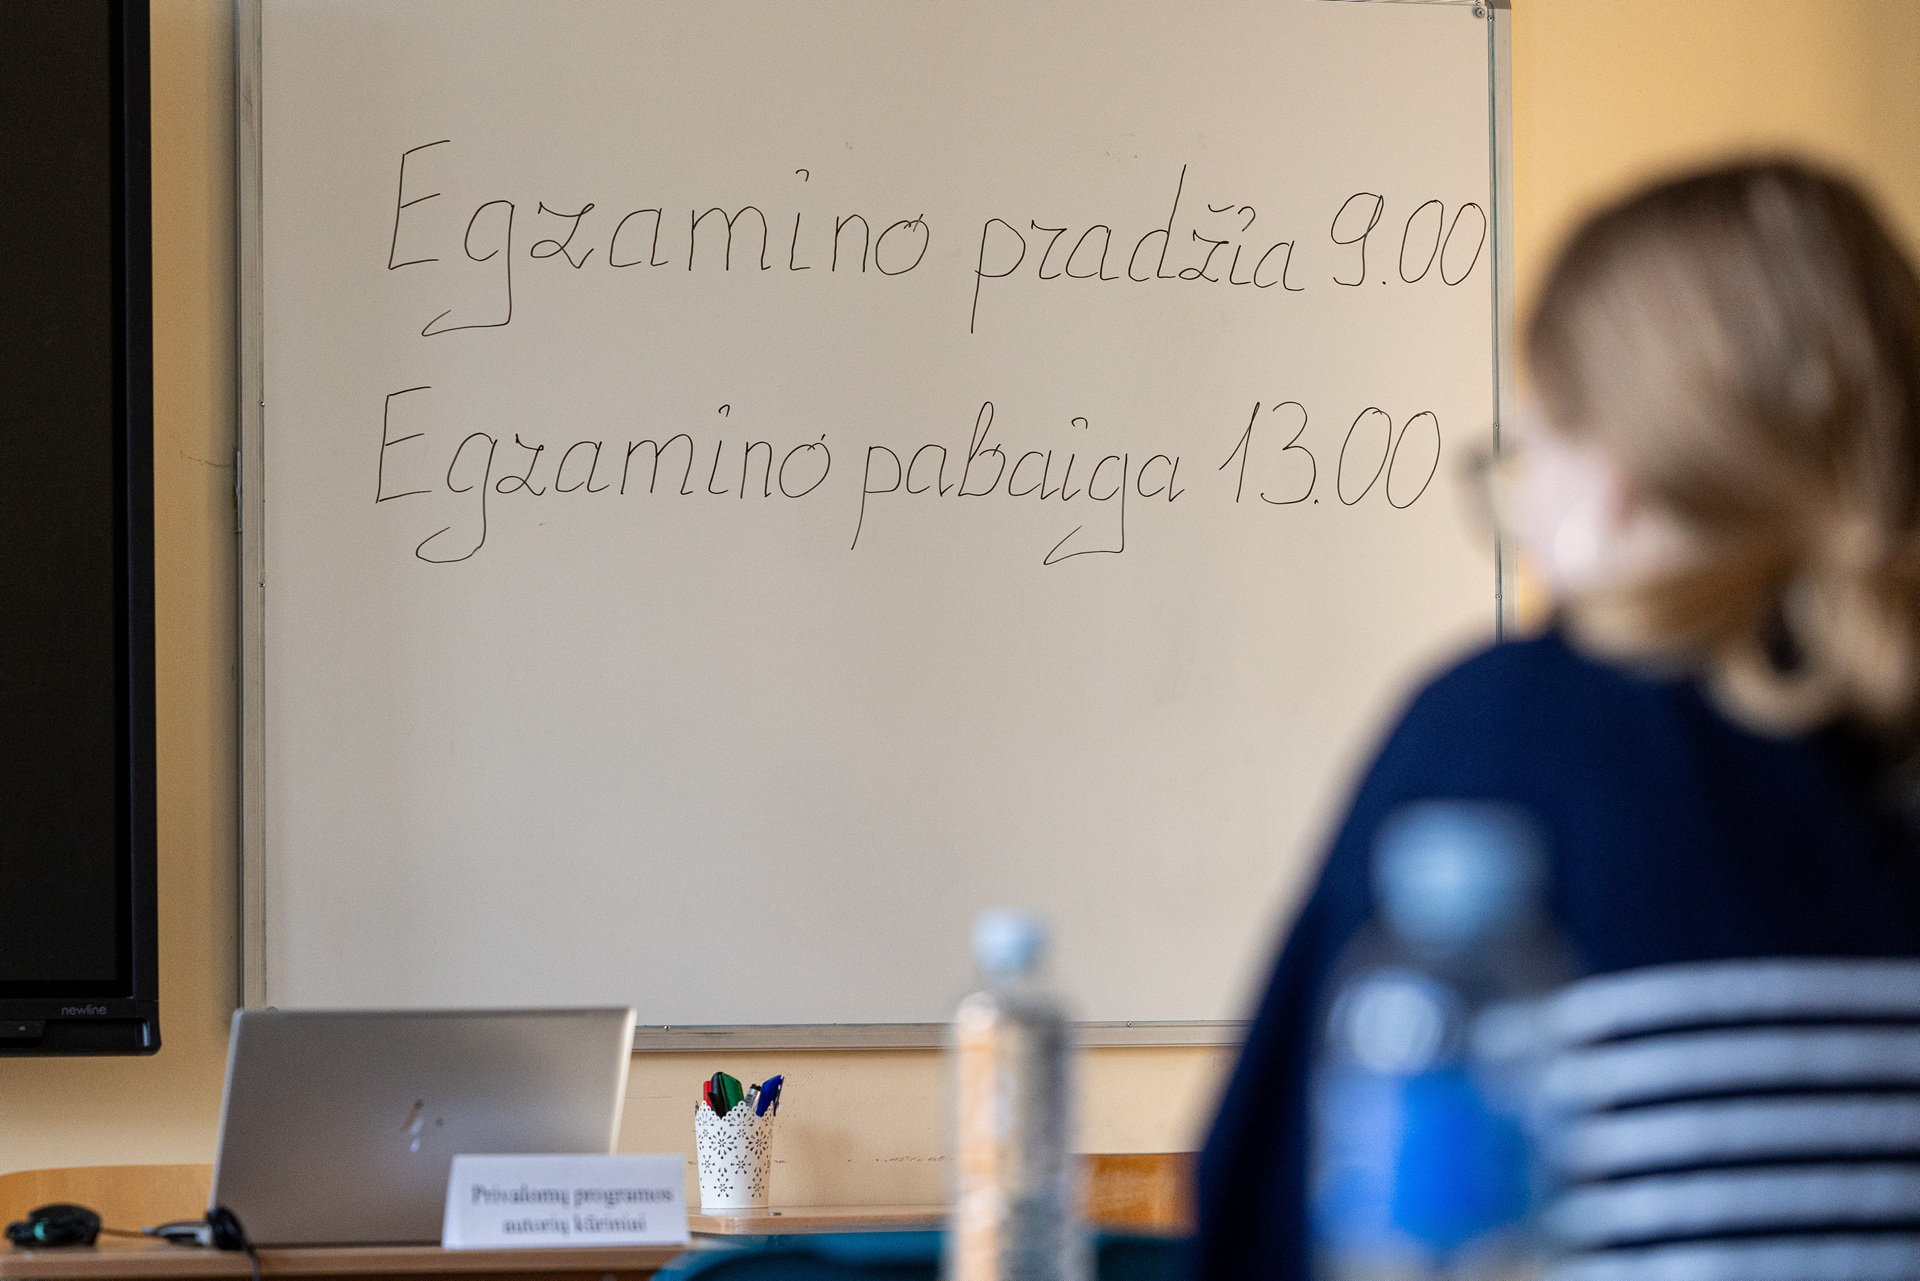 Vilniaus Antakalnio gimnazijoje laikomas lietuviu kalbos ir literaturos brandos egzaminas